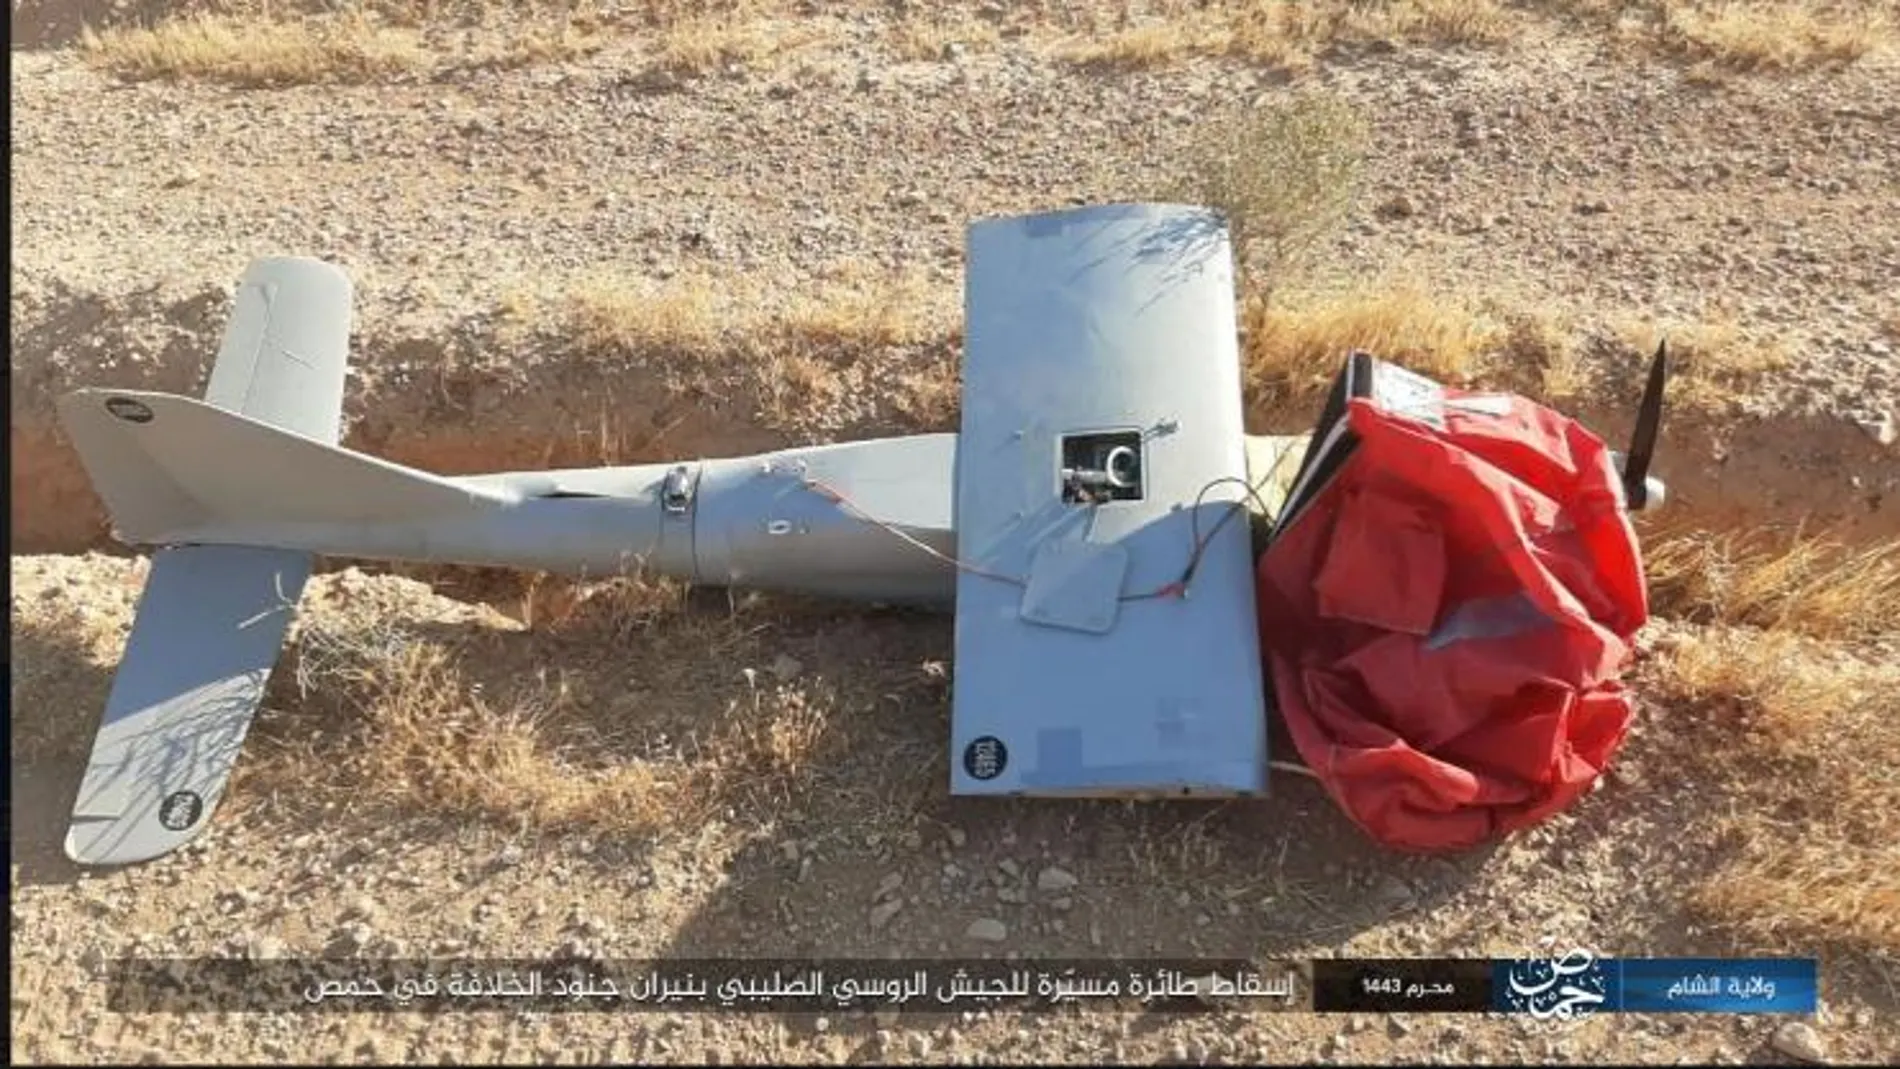 Fotografía difundida por Isis del aparato derribado